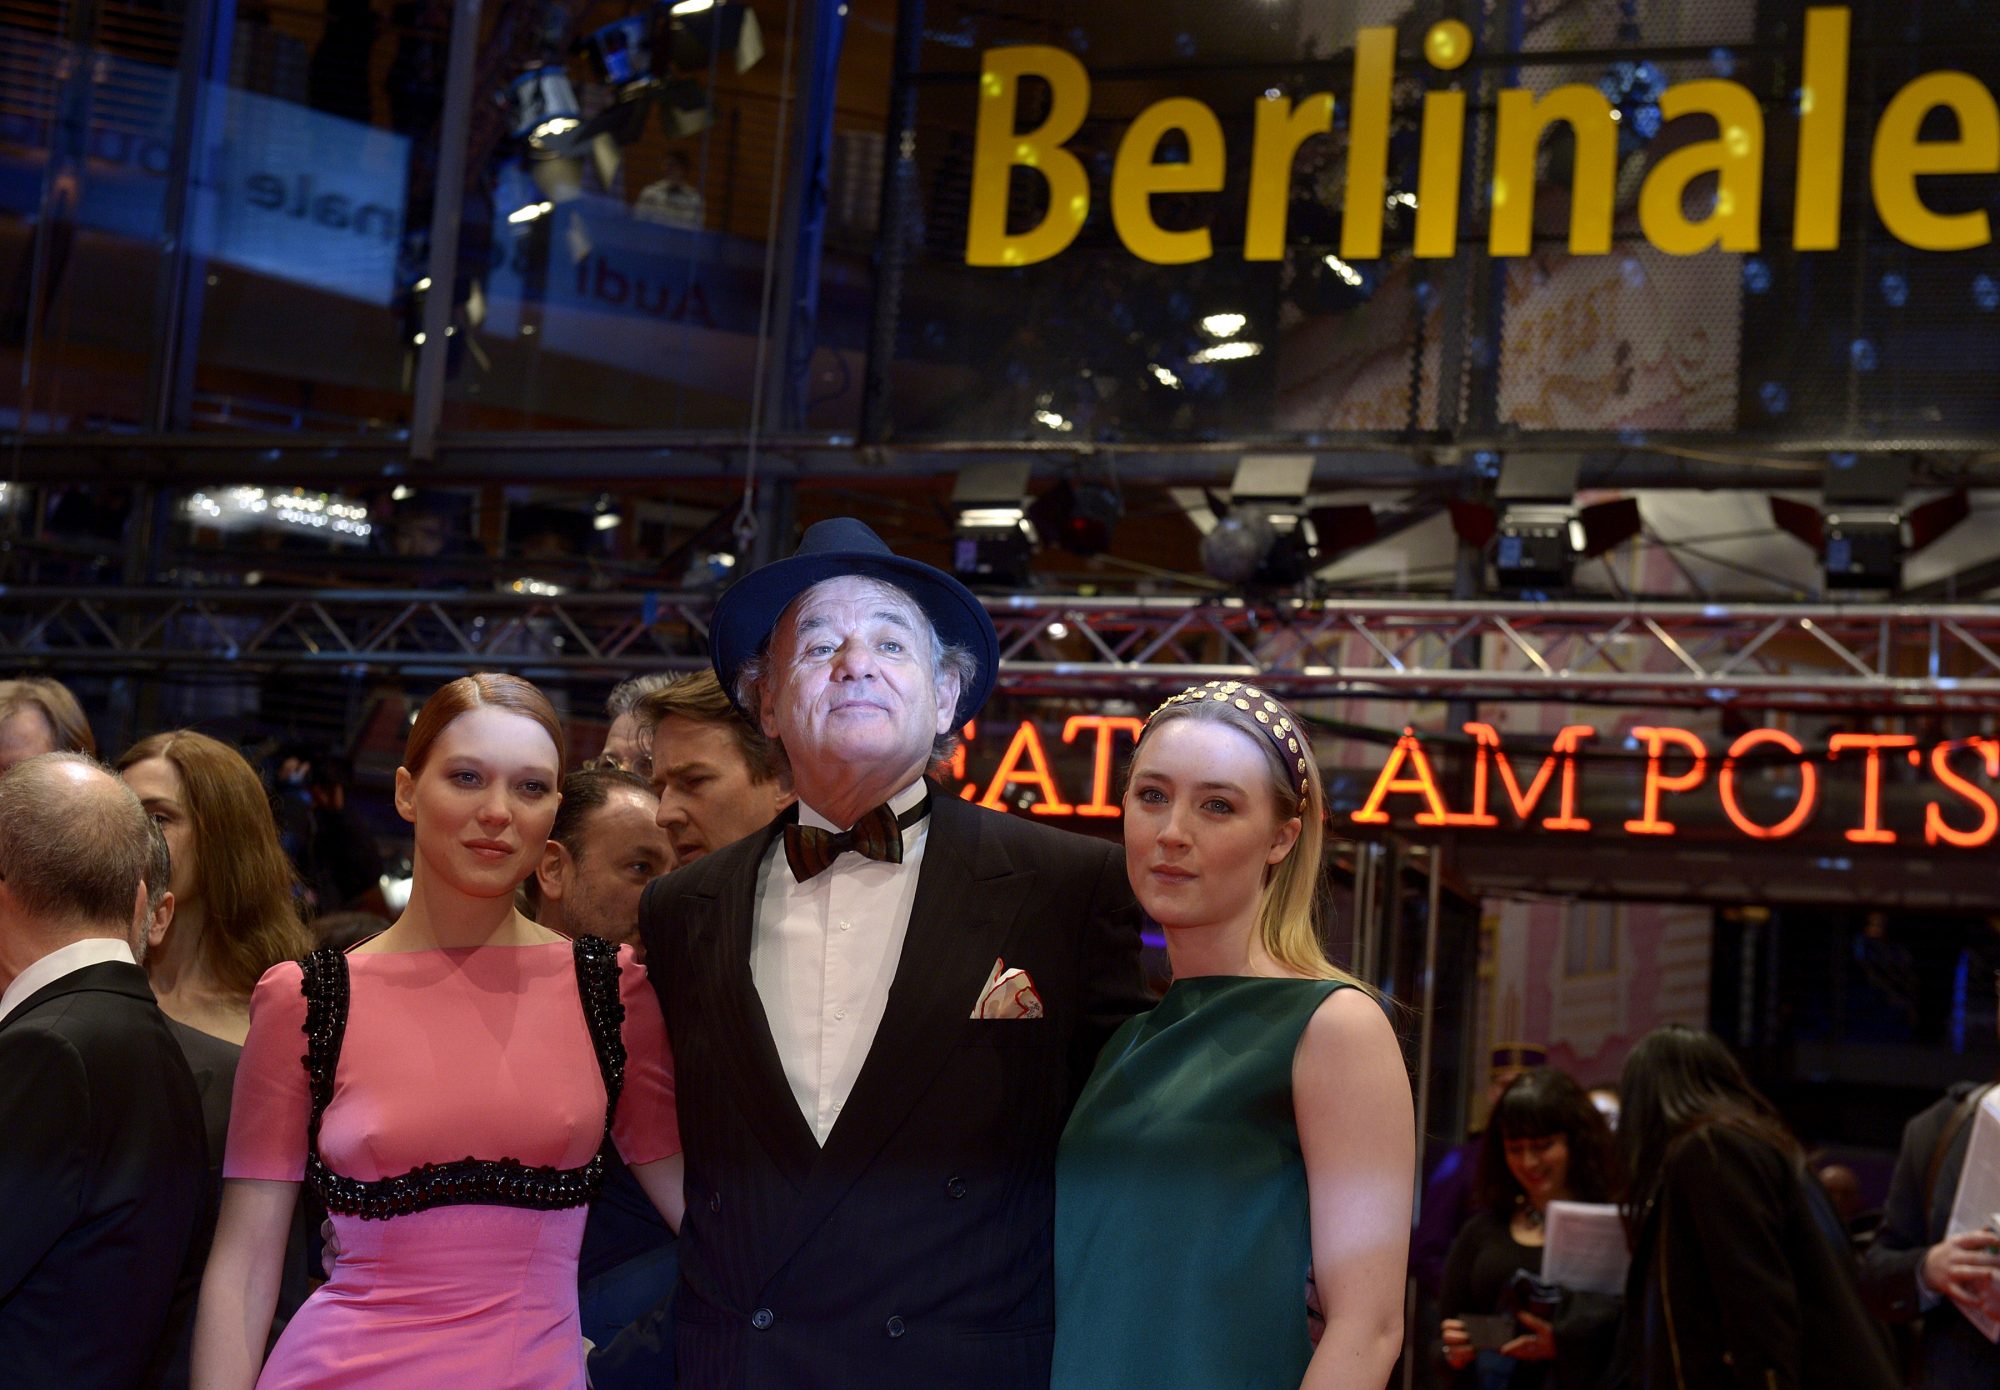 64. Berlinale - Schauspieler Lea Seydoux, Bill Murray, Saoirse Ronan stellen ihren Film The Grand Budapest Hotel" vor